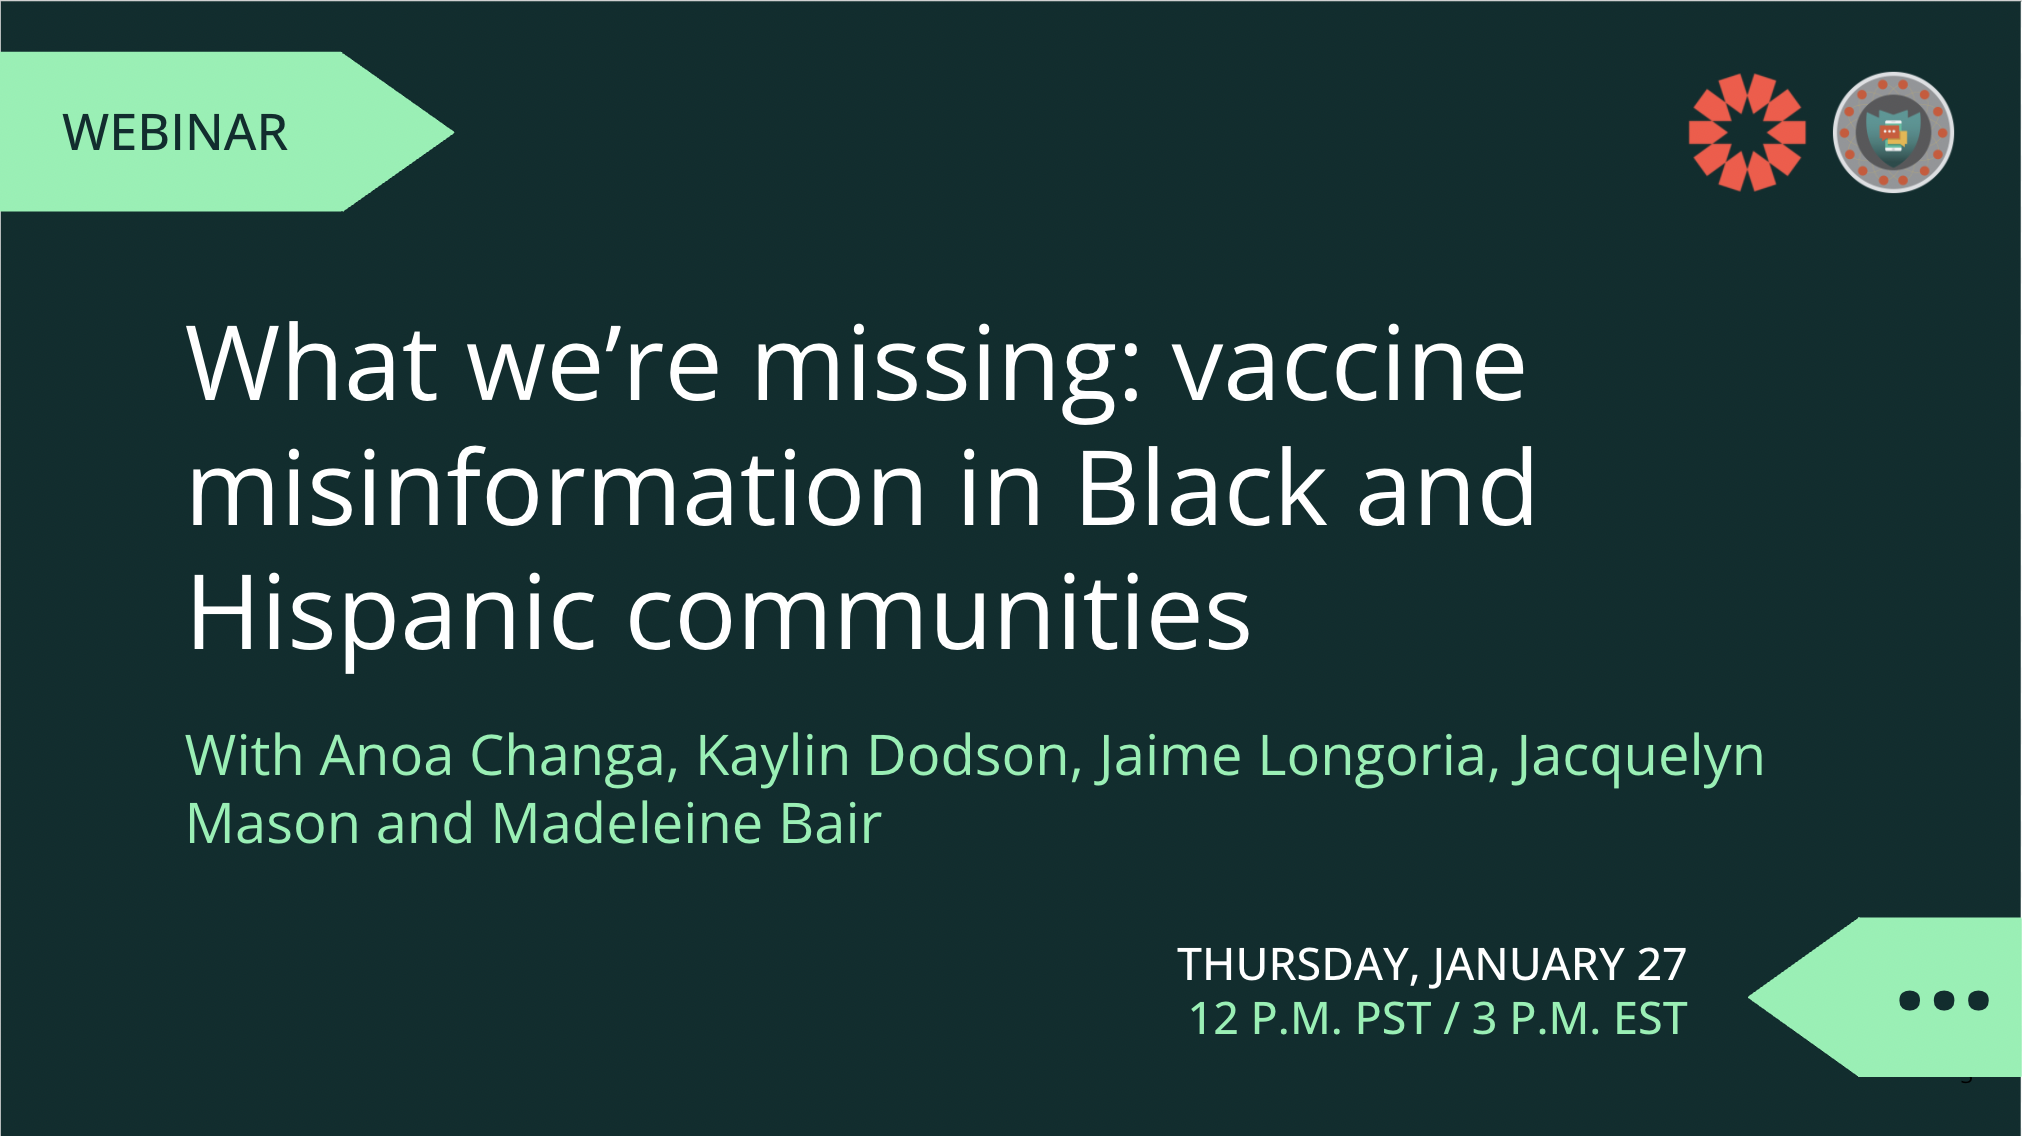 हम क्या याद कर रहे हैं: काले और हिस्पैनिक समुदायों में वैक्सीन गलत जानकारी